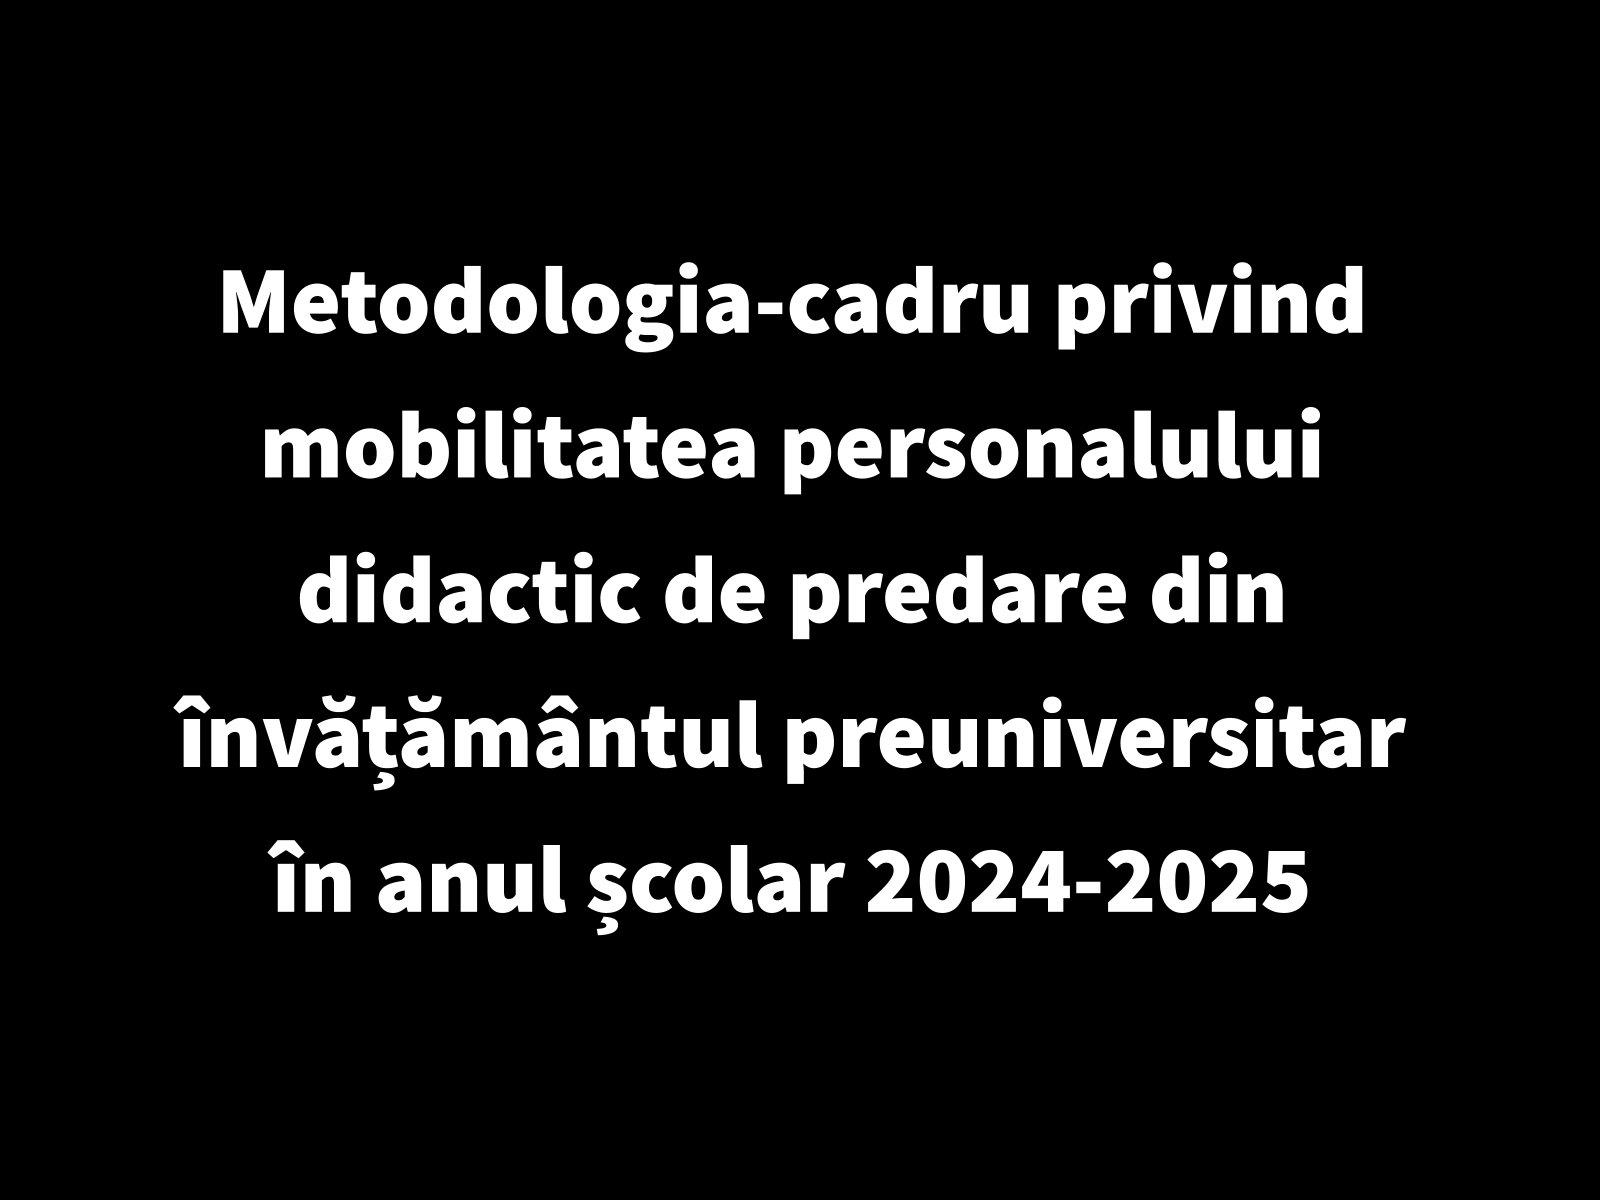 Metodologia-cadru privind mobilitatea personalului didactic de predare din învățământul preuniversitar în anul școlar 2024-2025